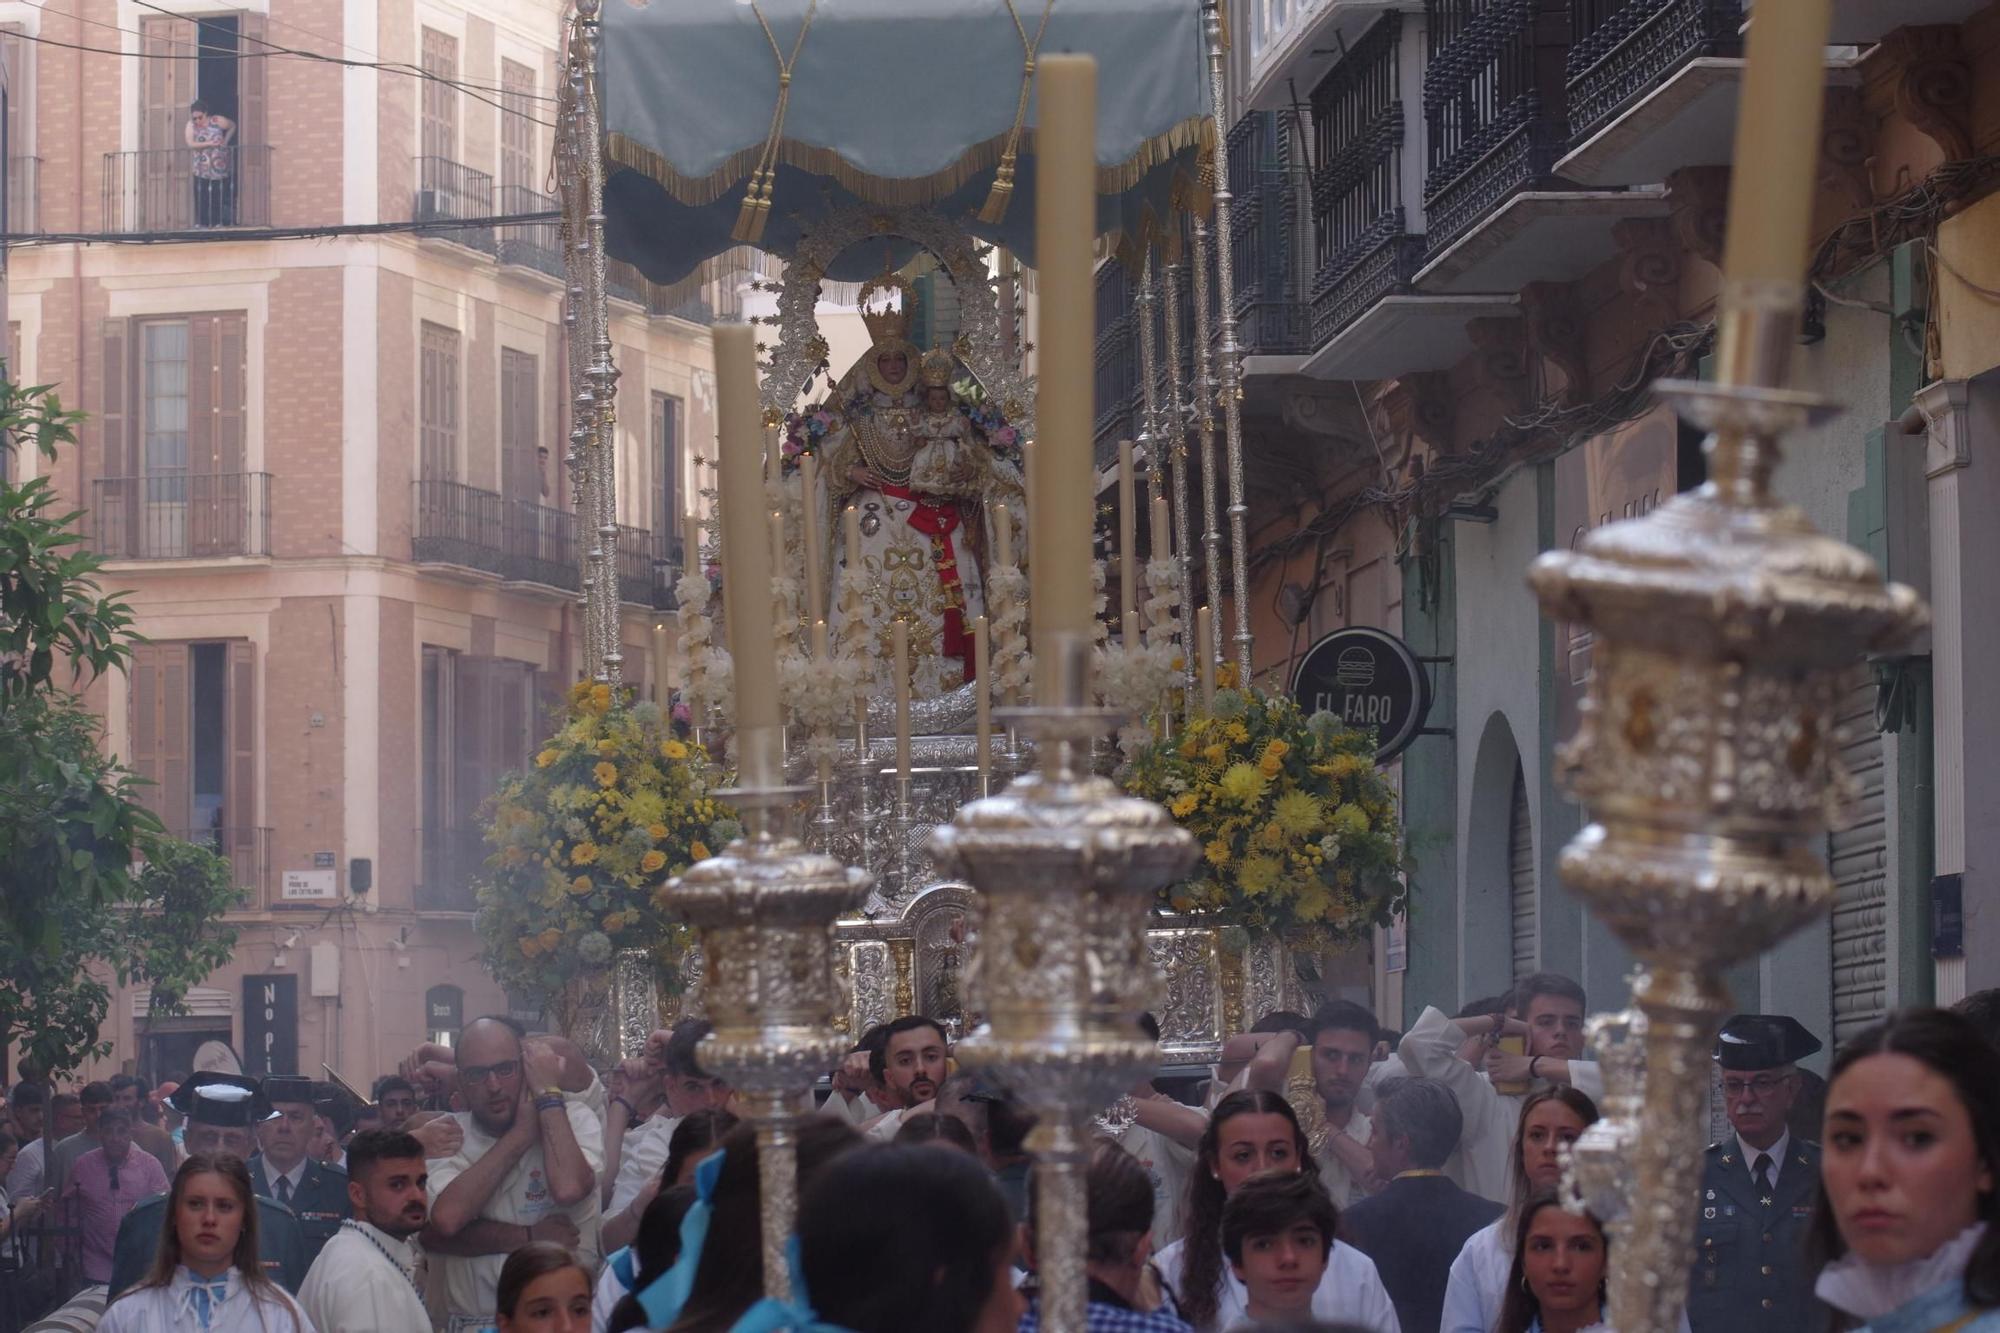 Procesión de la Virgen de Araceli por el Centro de Málaga, desde San Julián

